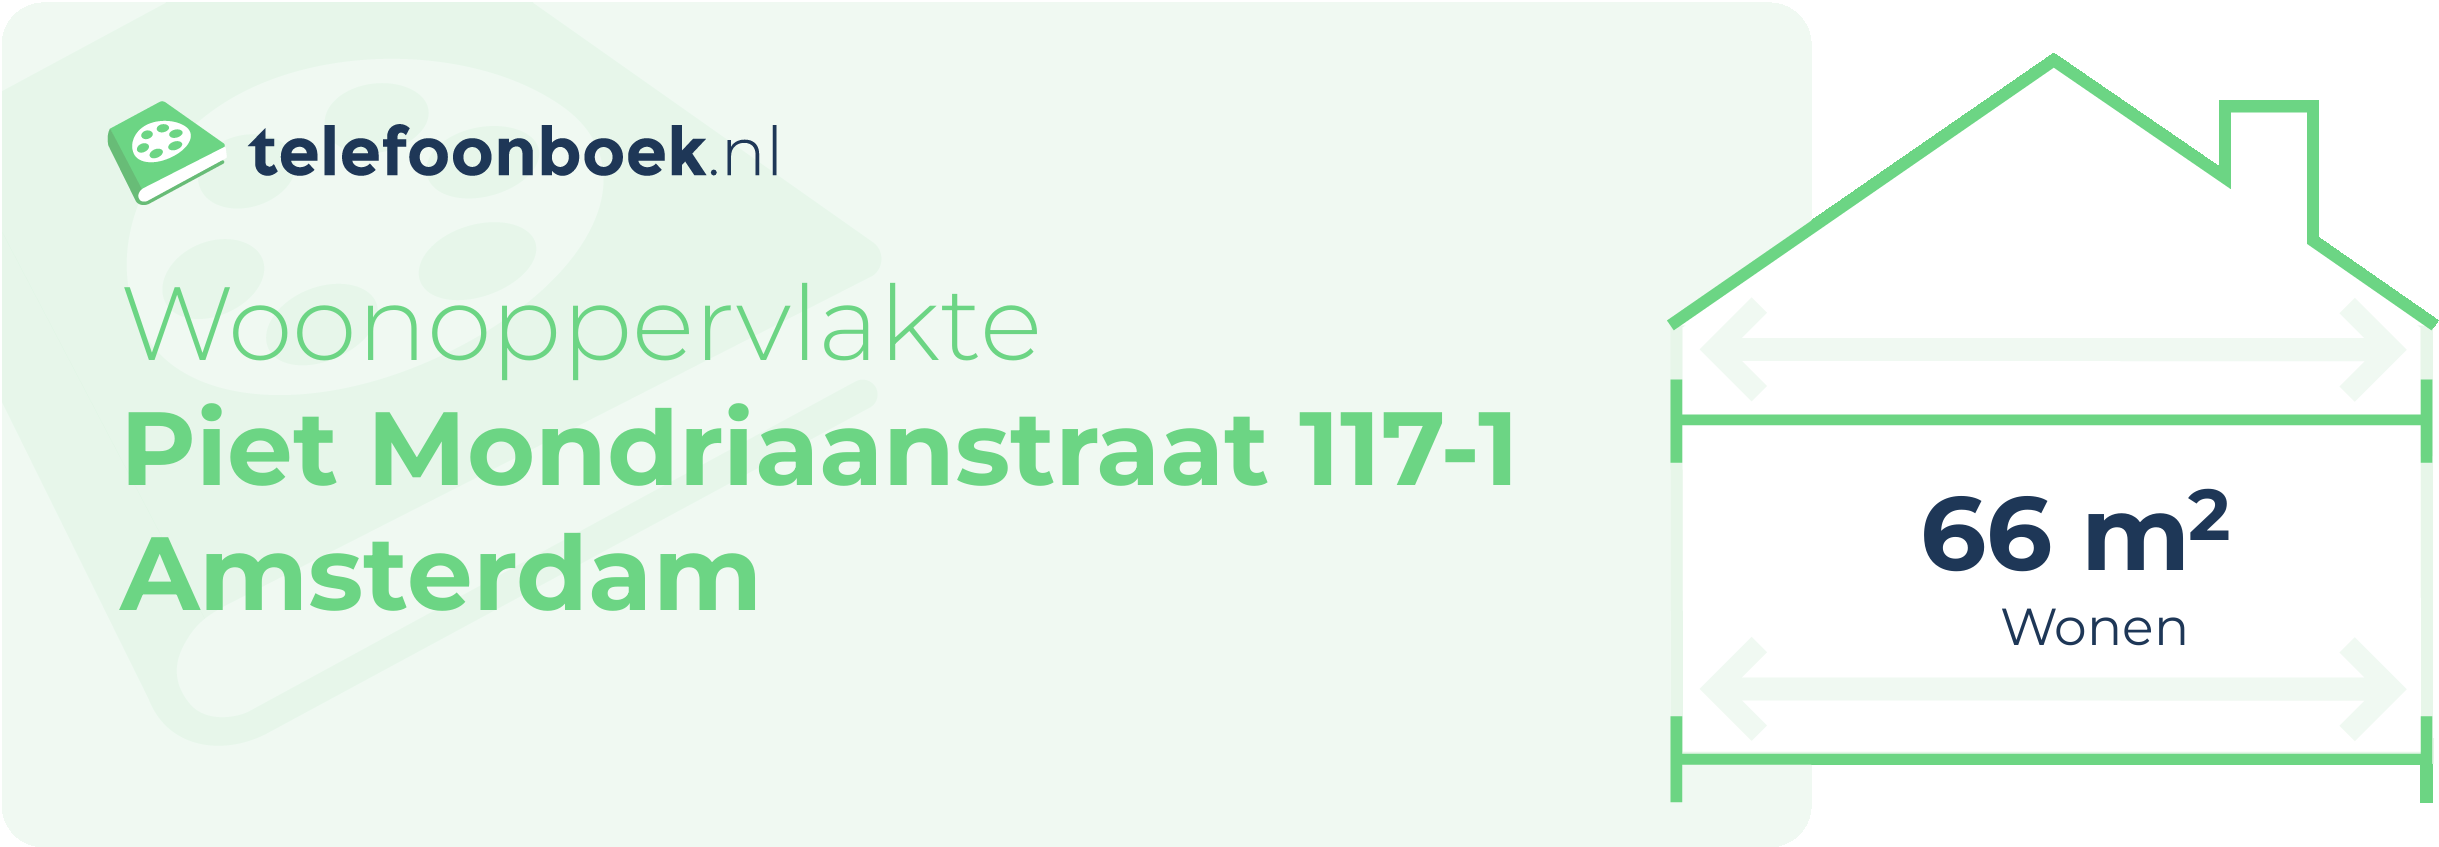 Woonoppervlakte Piet Mondriaanstraat 117-1 Amsterdam